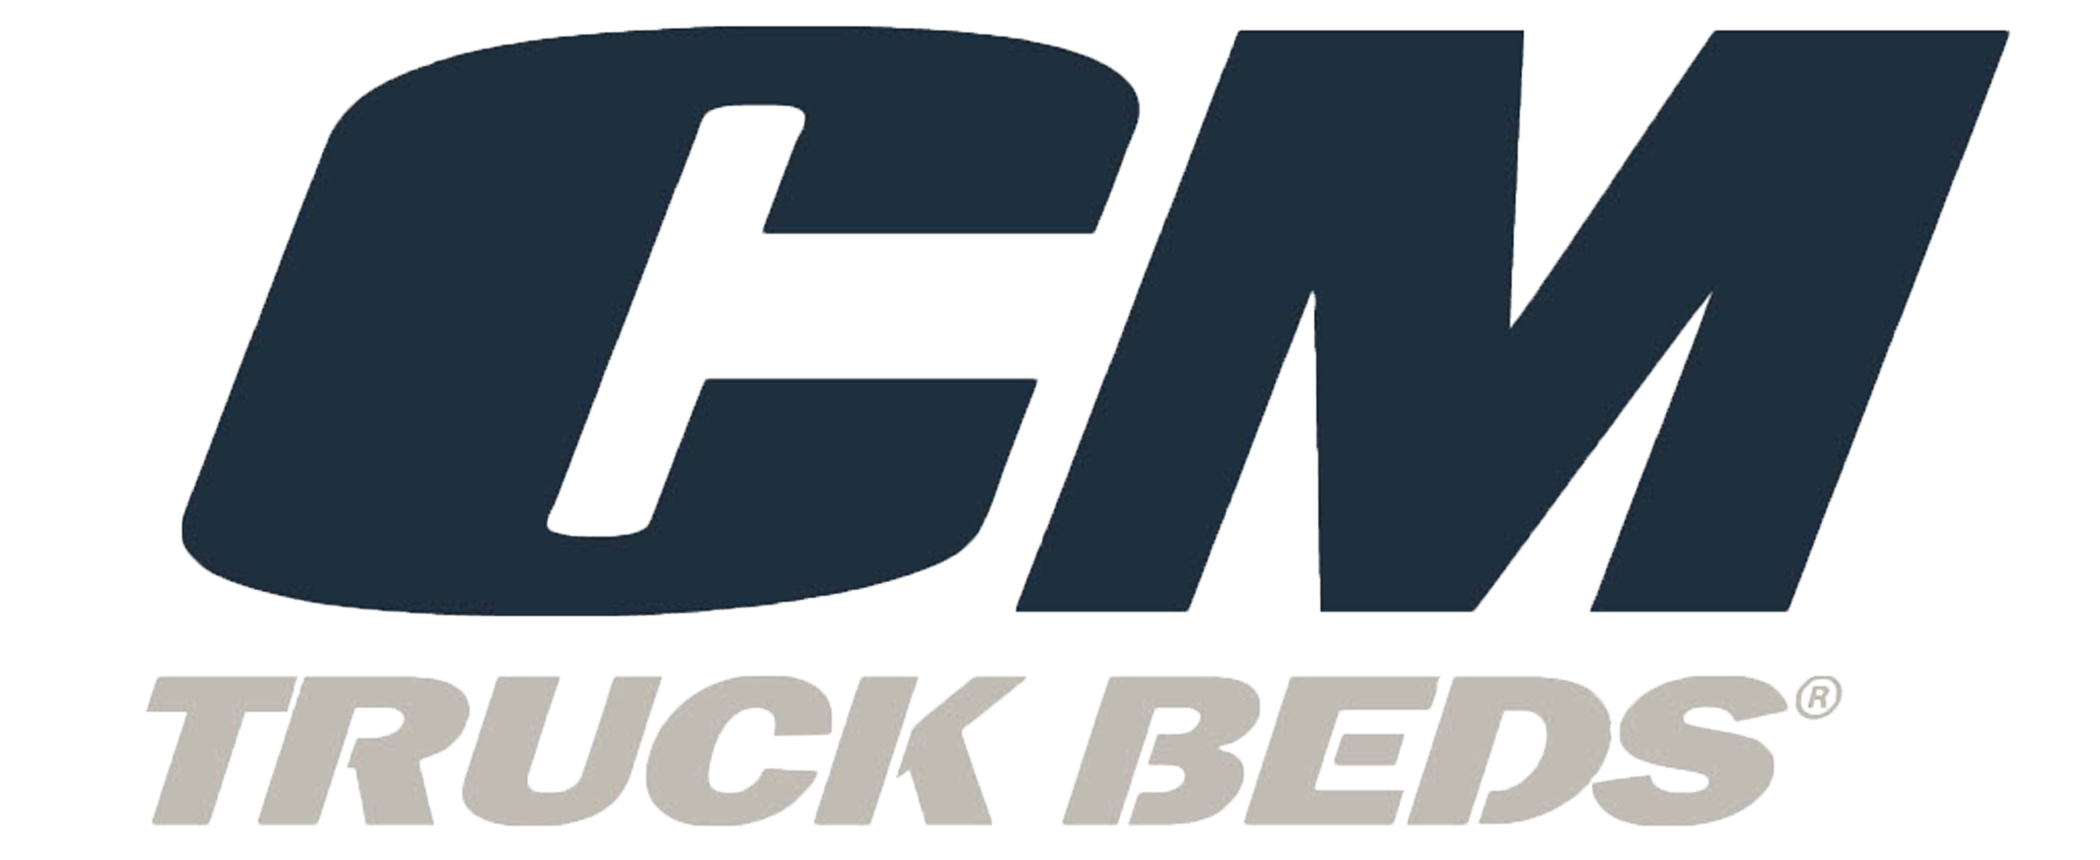 Cm Truck Beds Logo Packer City And Up International Trucks